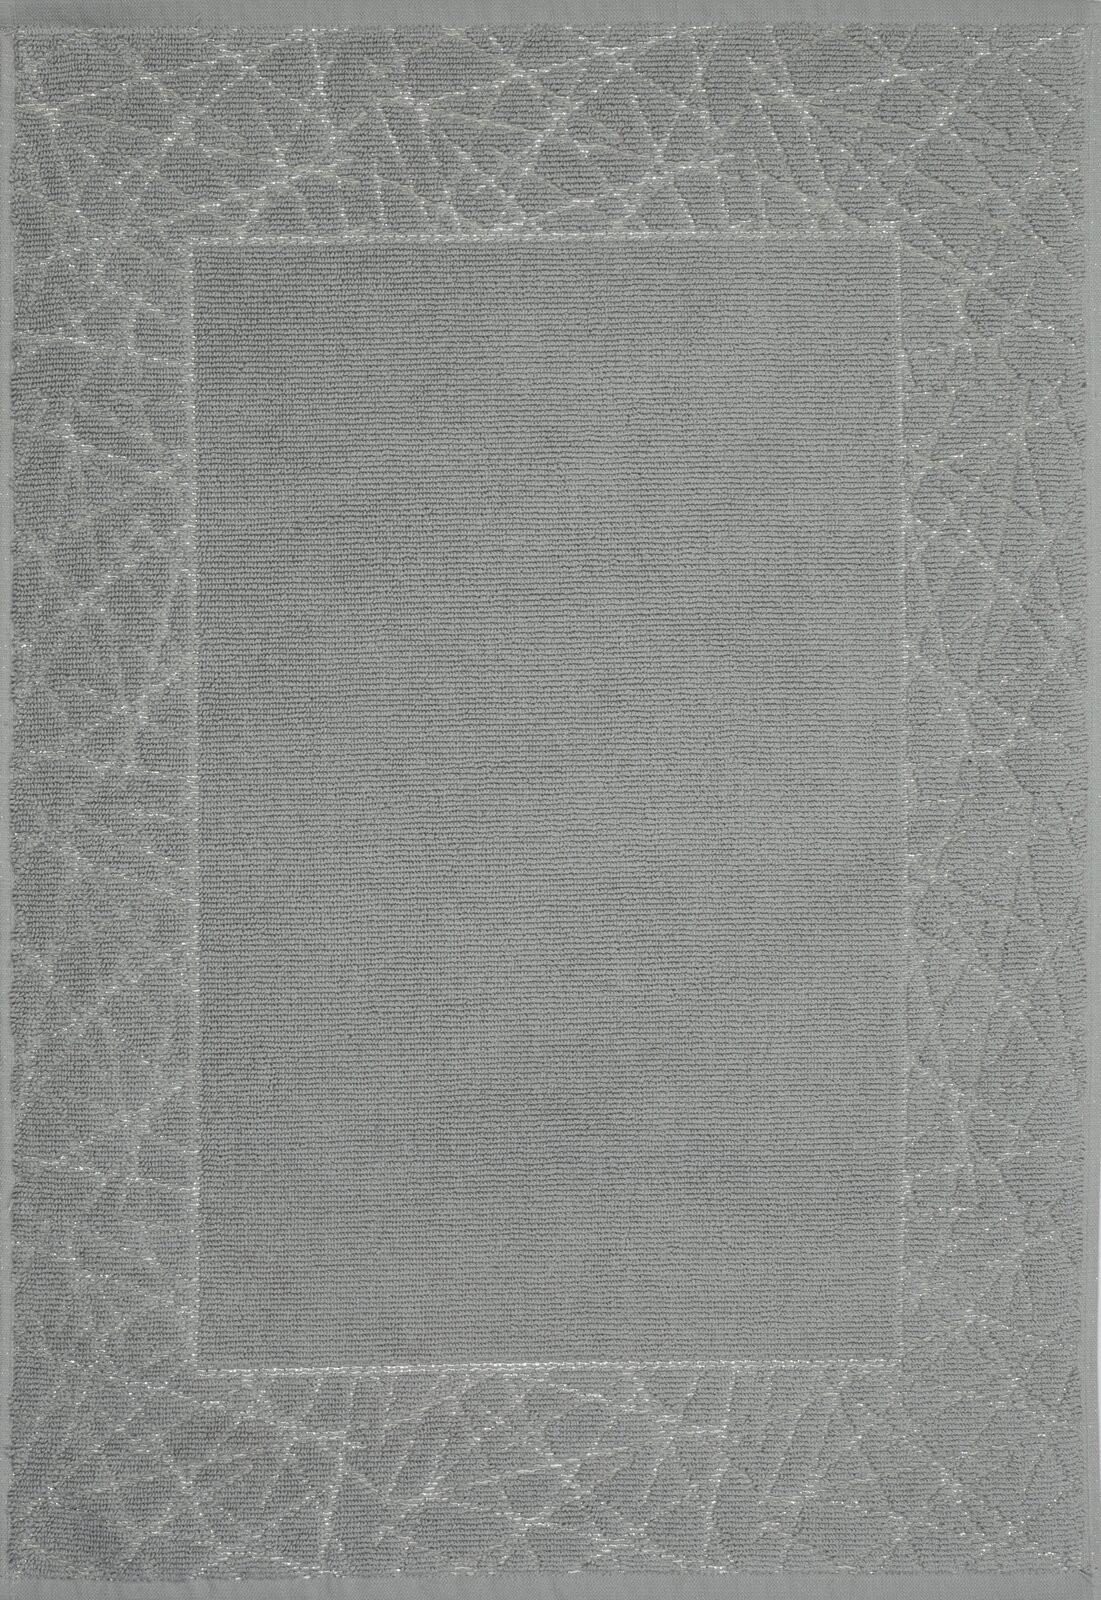 Koupelnový koberec NIKA 05 šedý